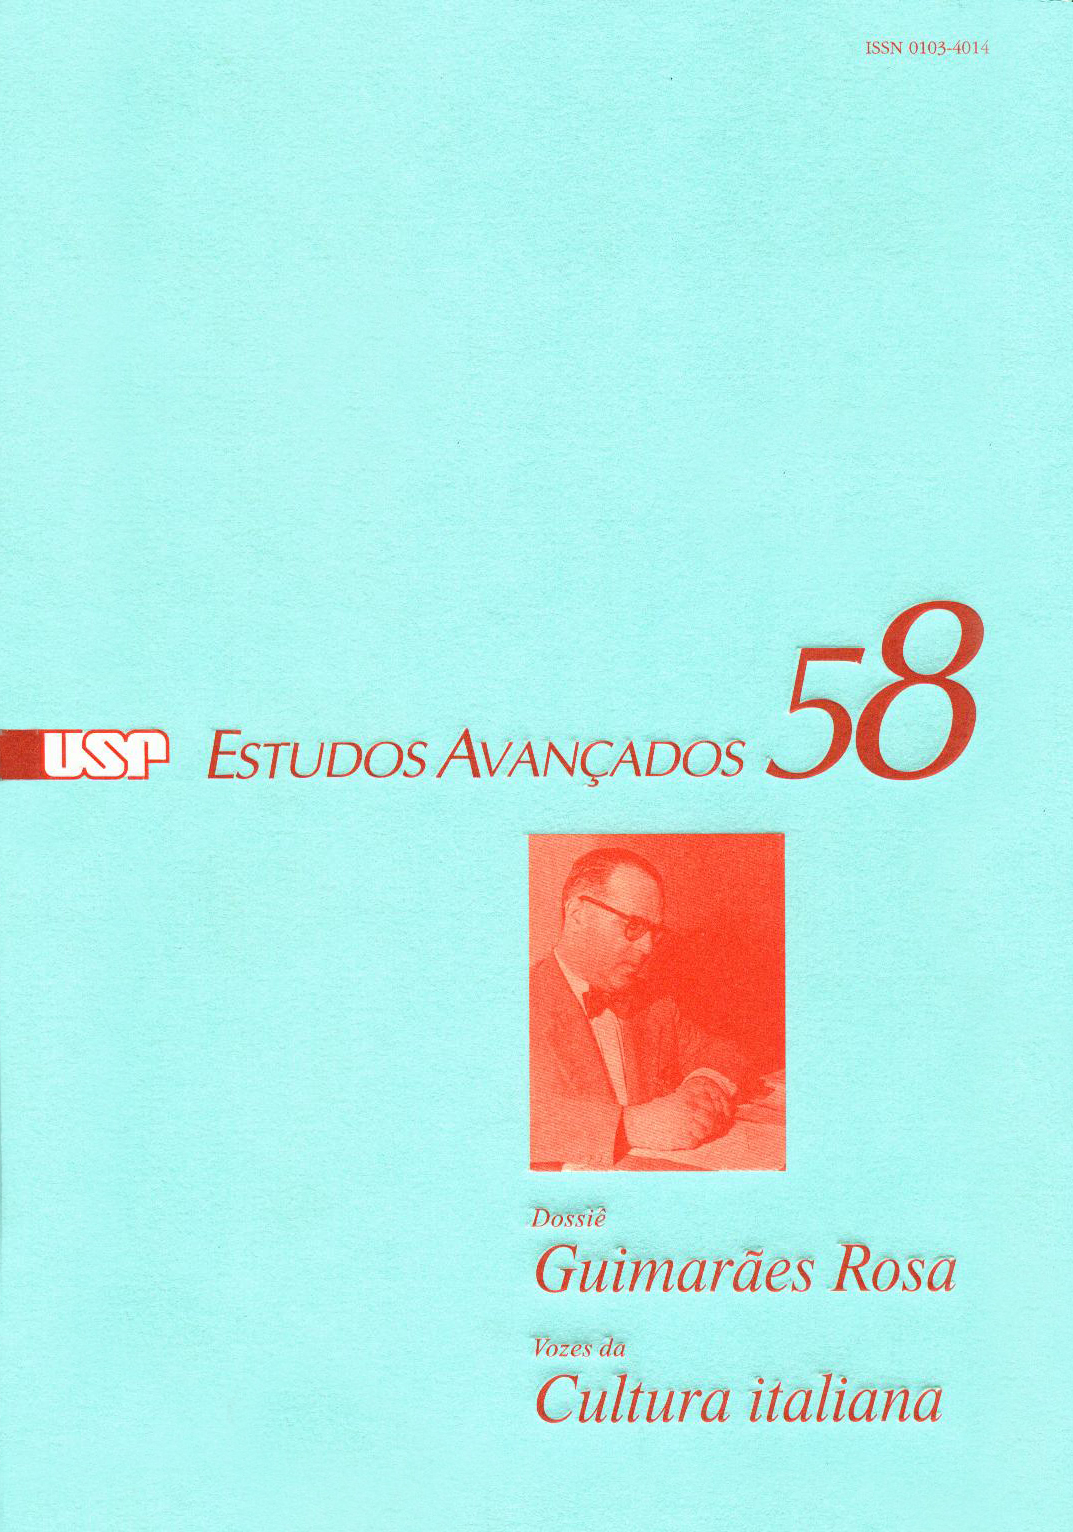 Capa Revista Estudos Avançados v20 n58